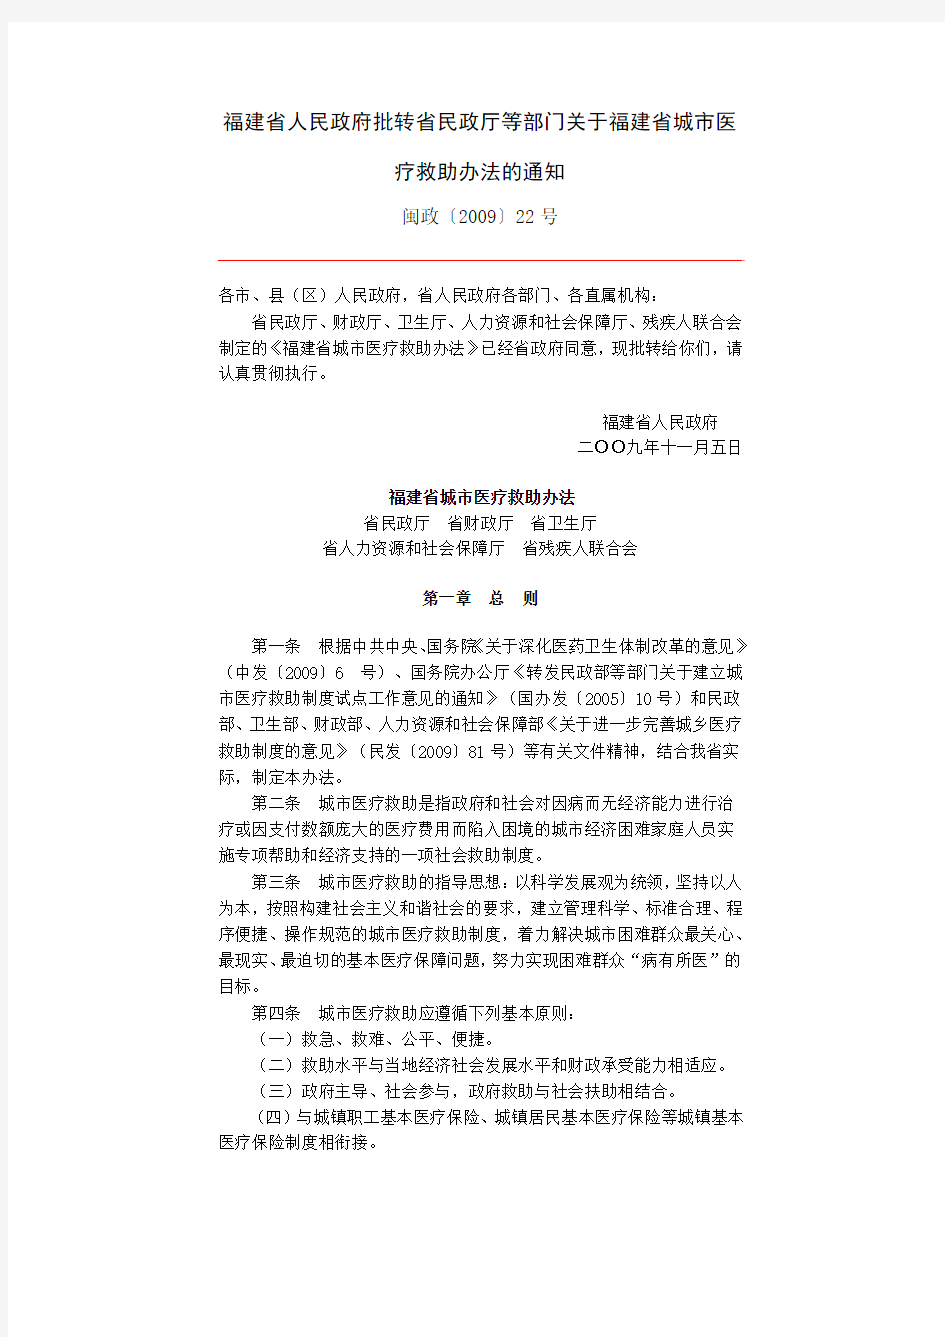 福建省人民政府批转省民政厅等部门关于福建省城市医疗救助办法的通知